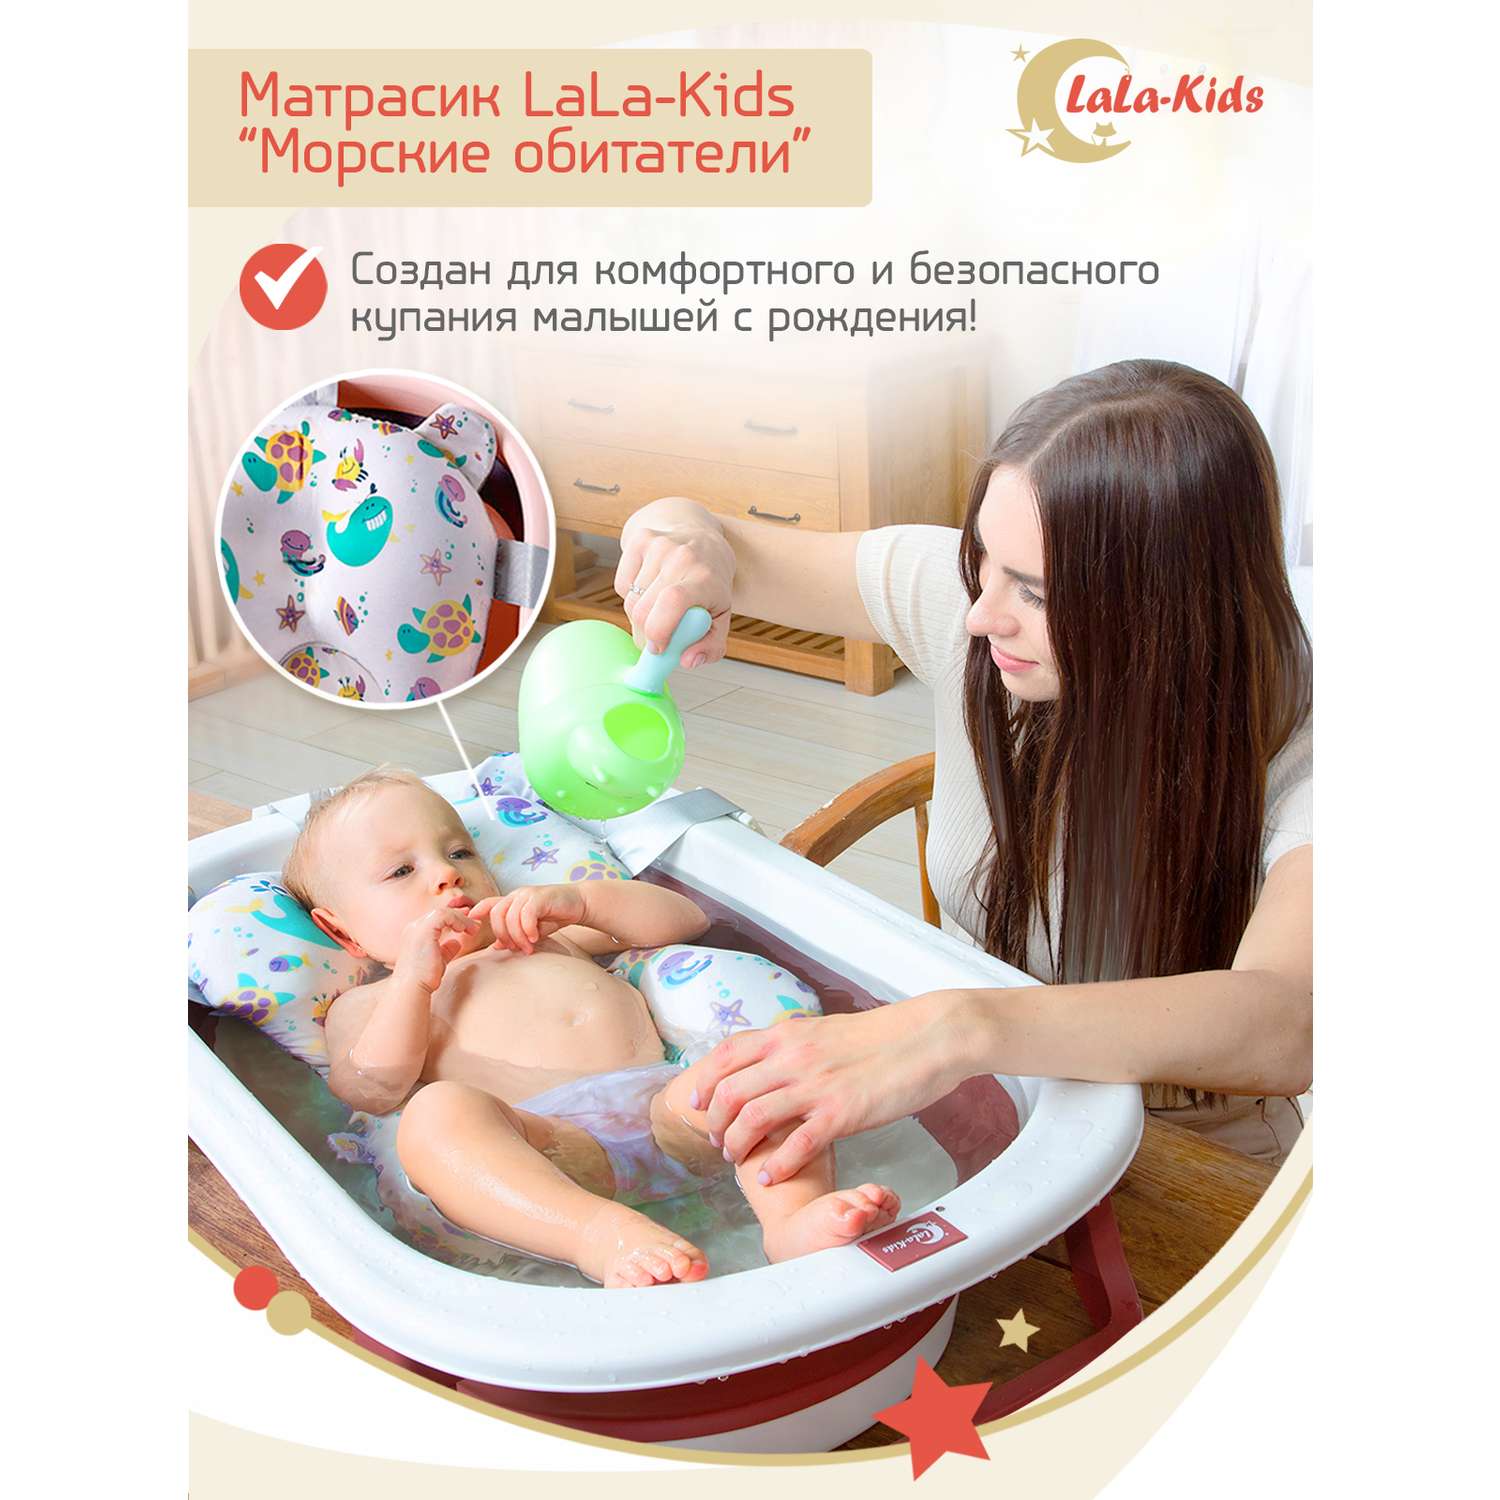 Матрасик для детской ванночки LaLa-Kids для купания новорожденных - фото 3